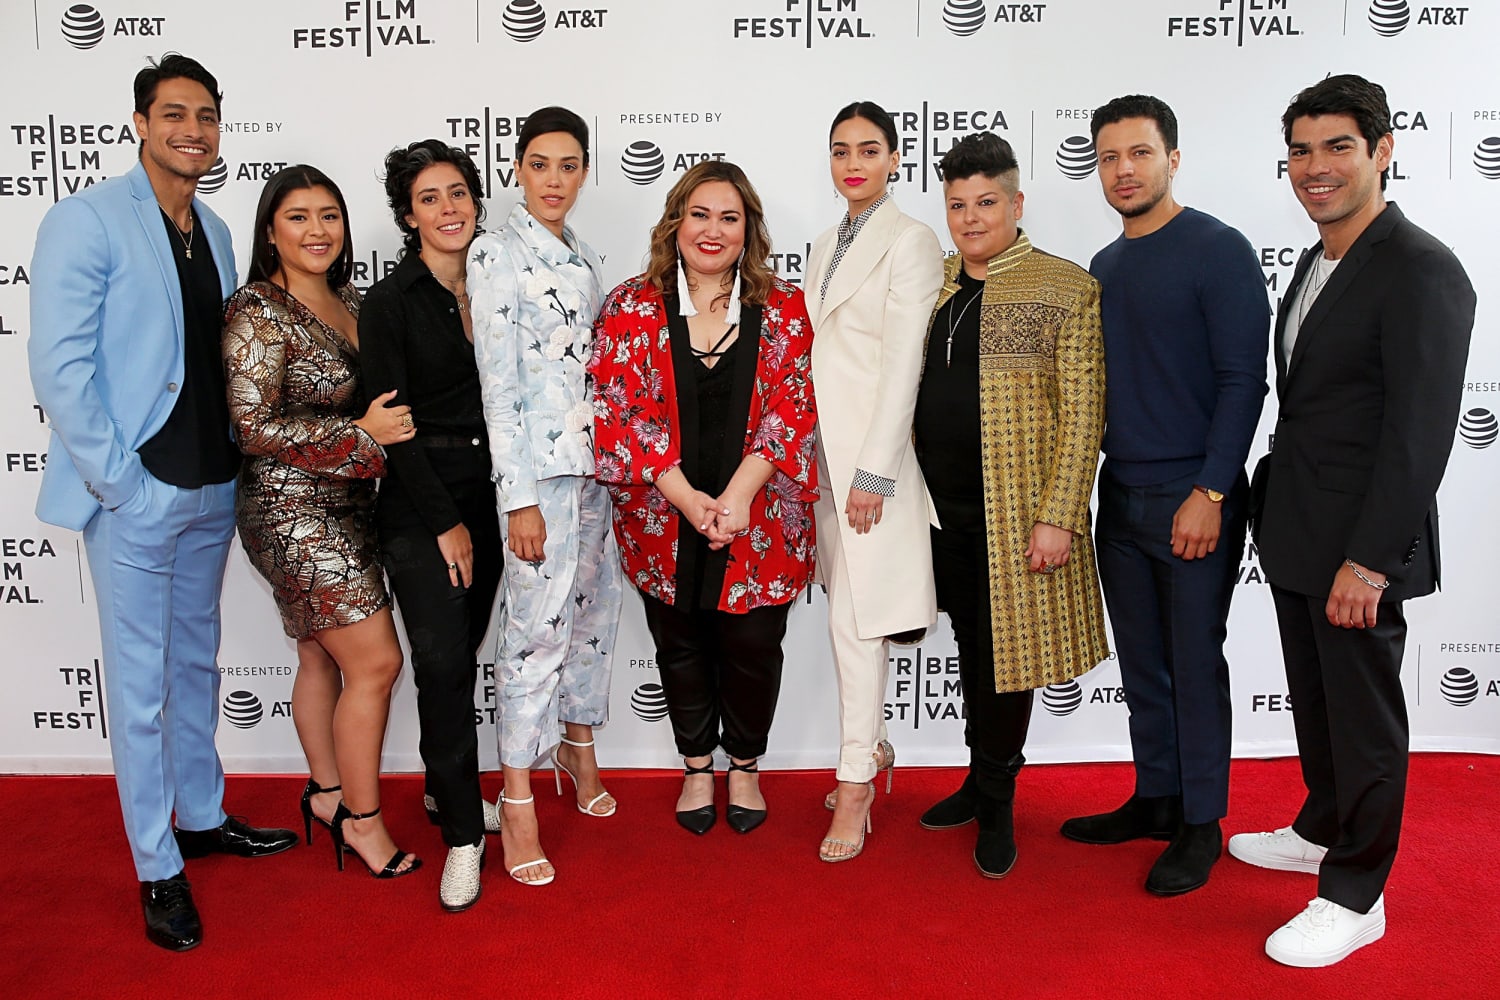 Starz debuts season 2 of 'Vida' at Tribeca Film Festival